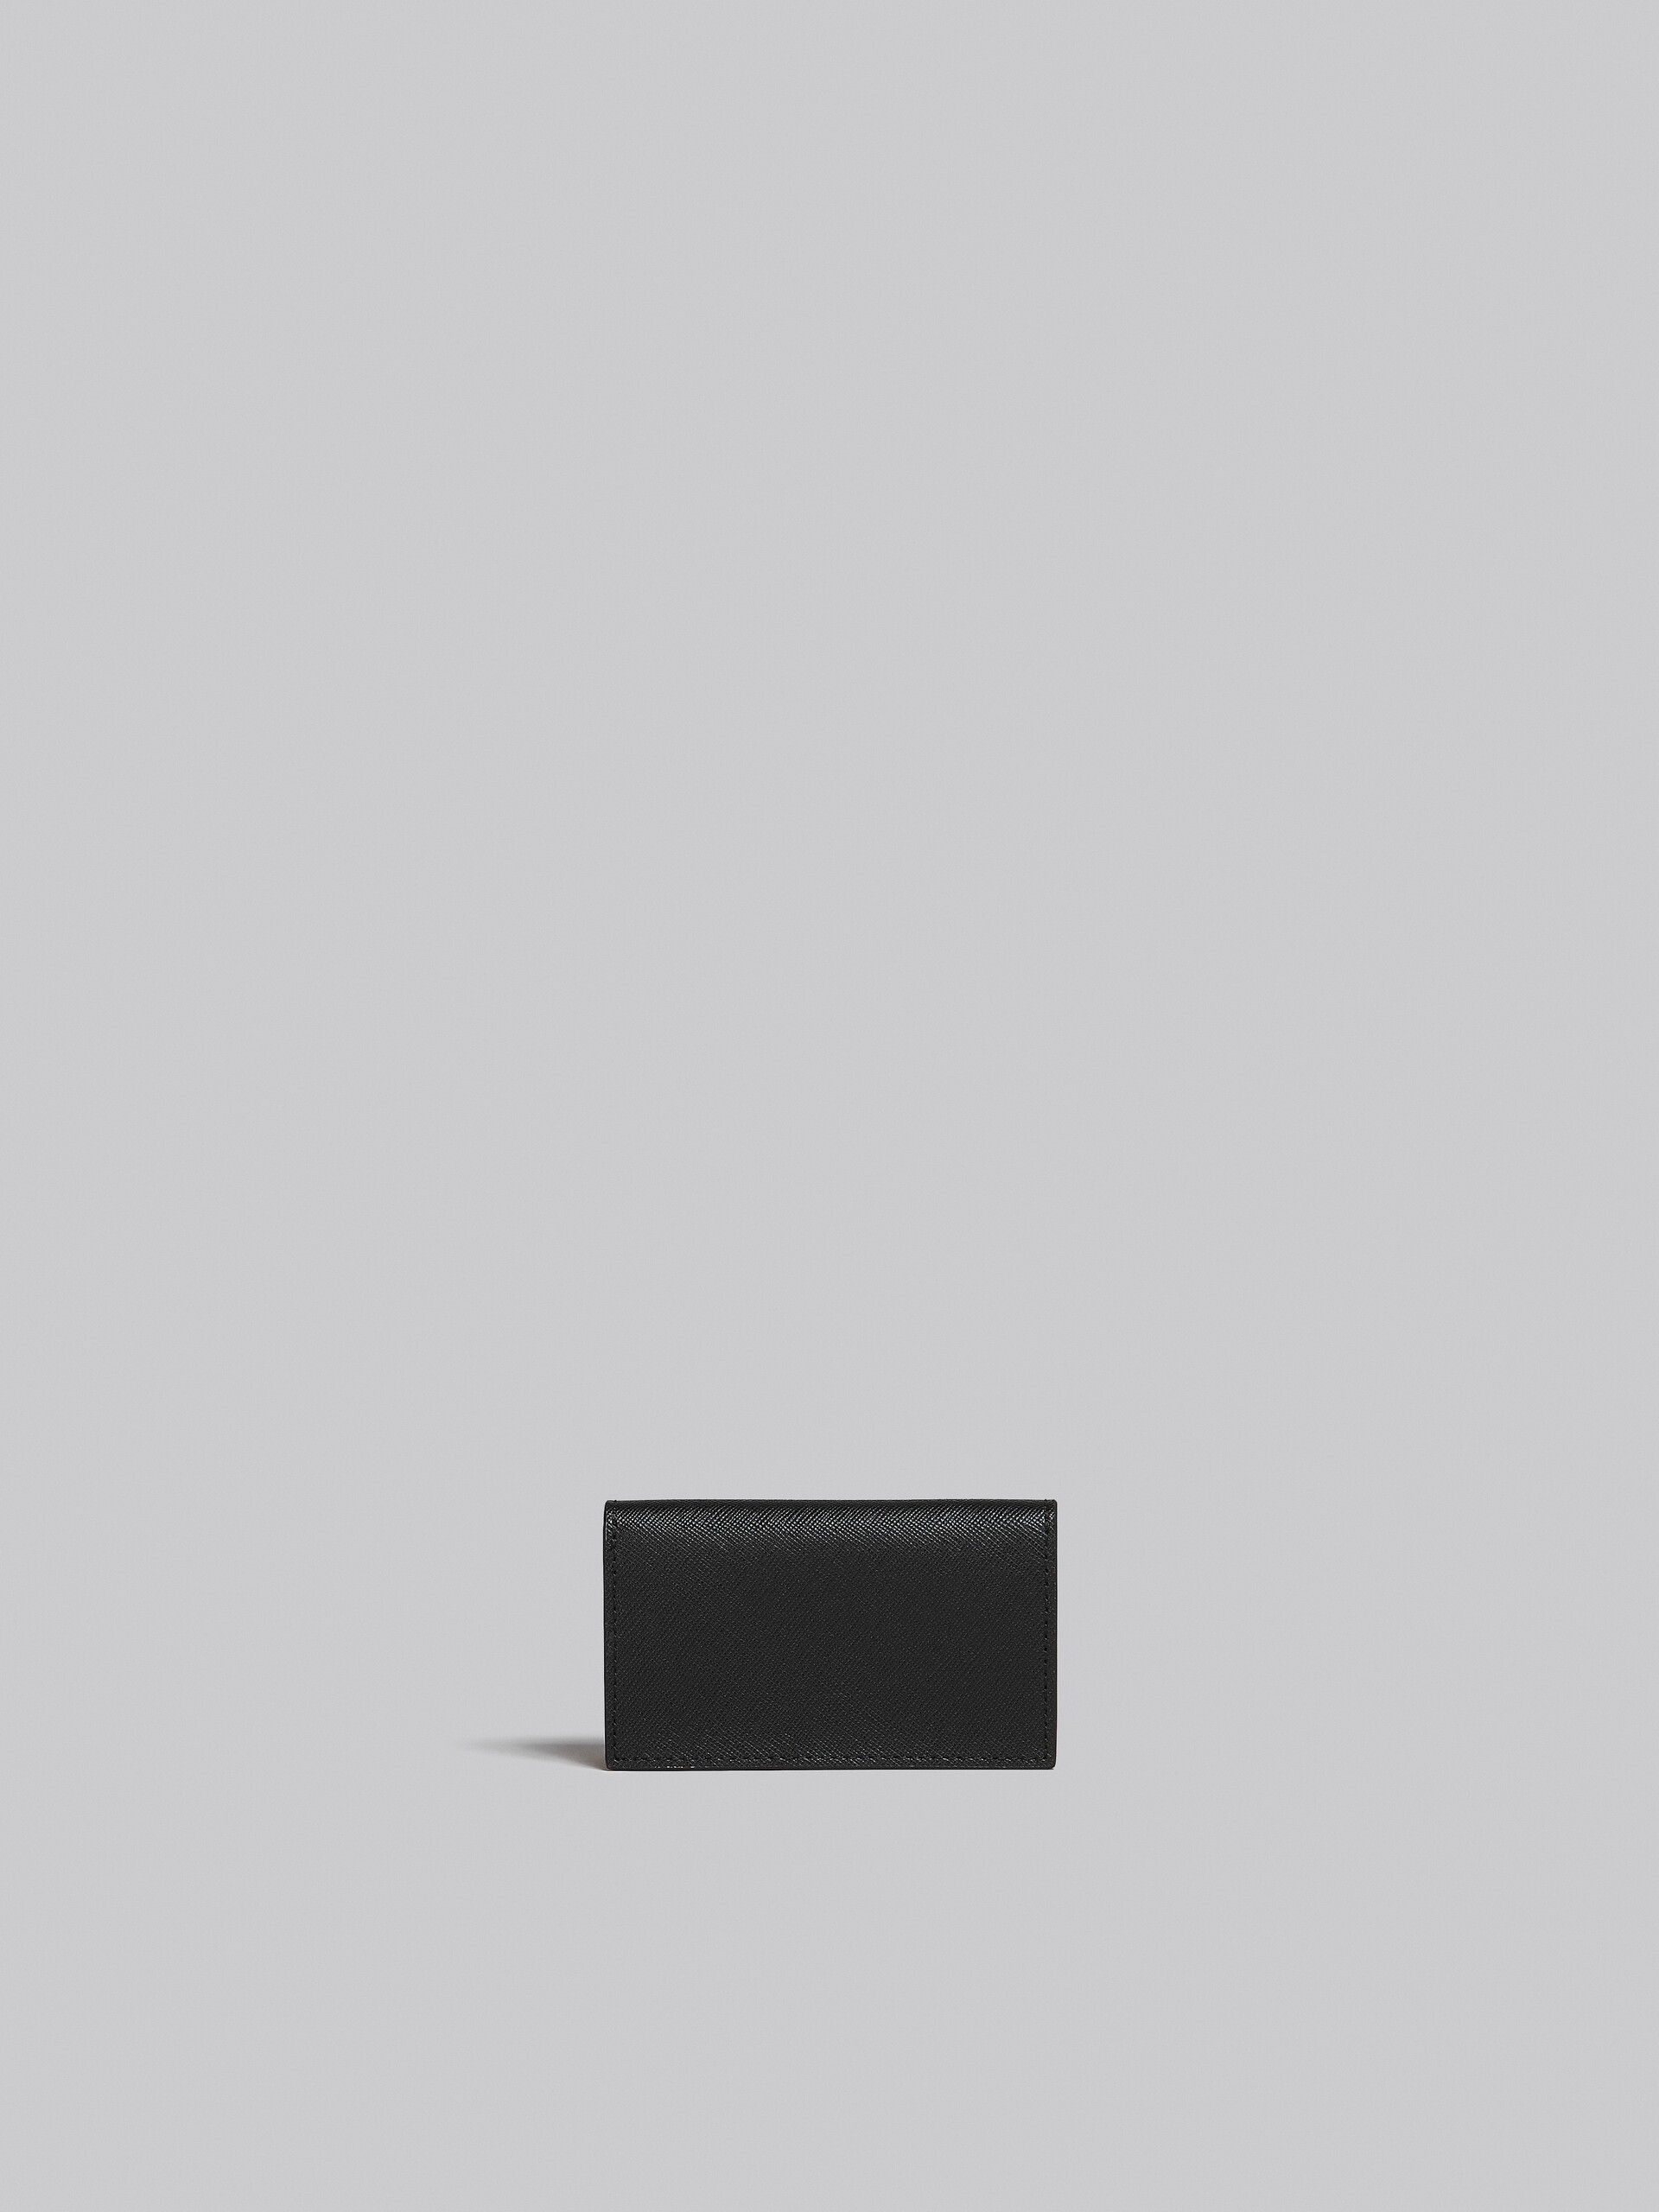 ブラック サフィアーノレザー製 ビジネスカードケース - 財布 - Image 3